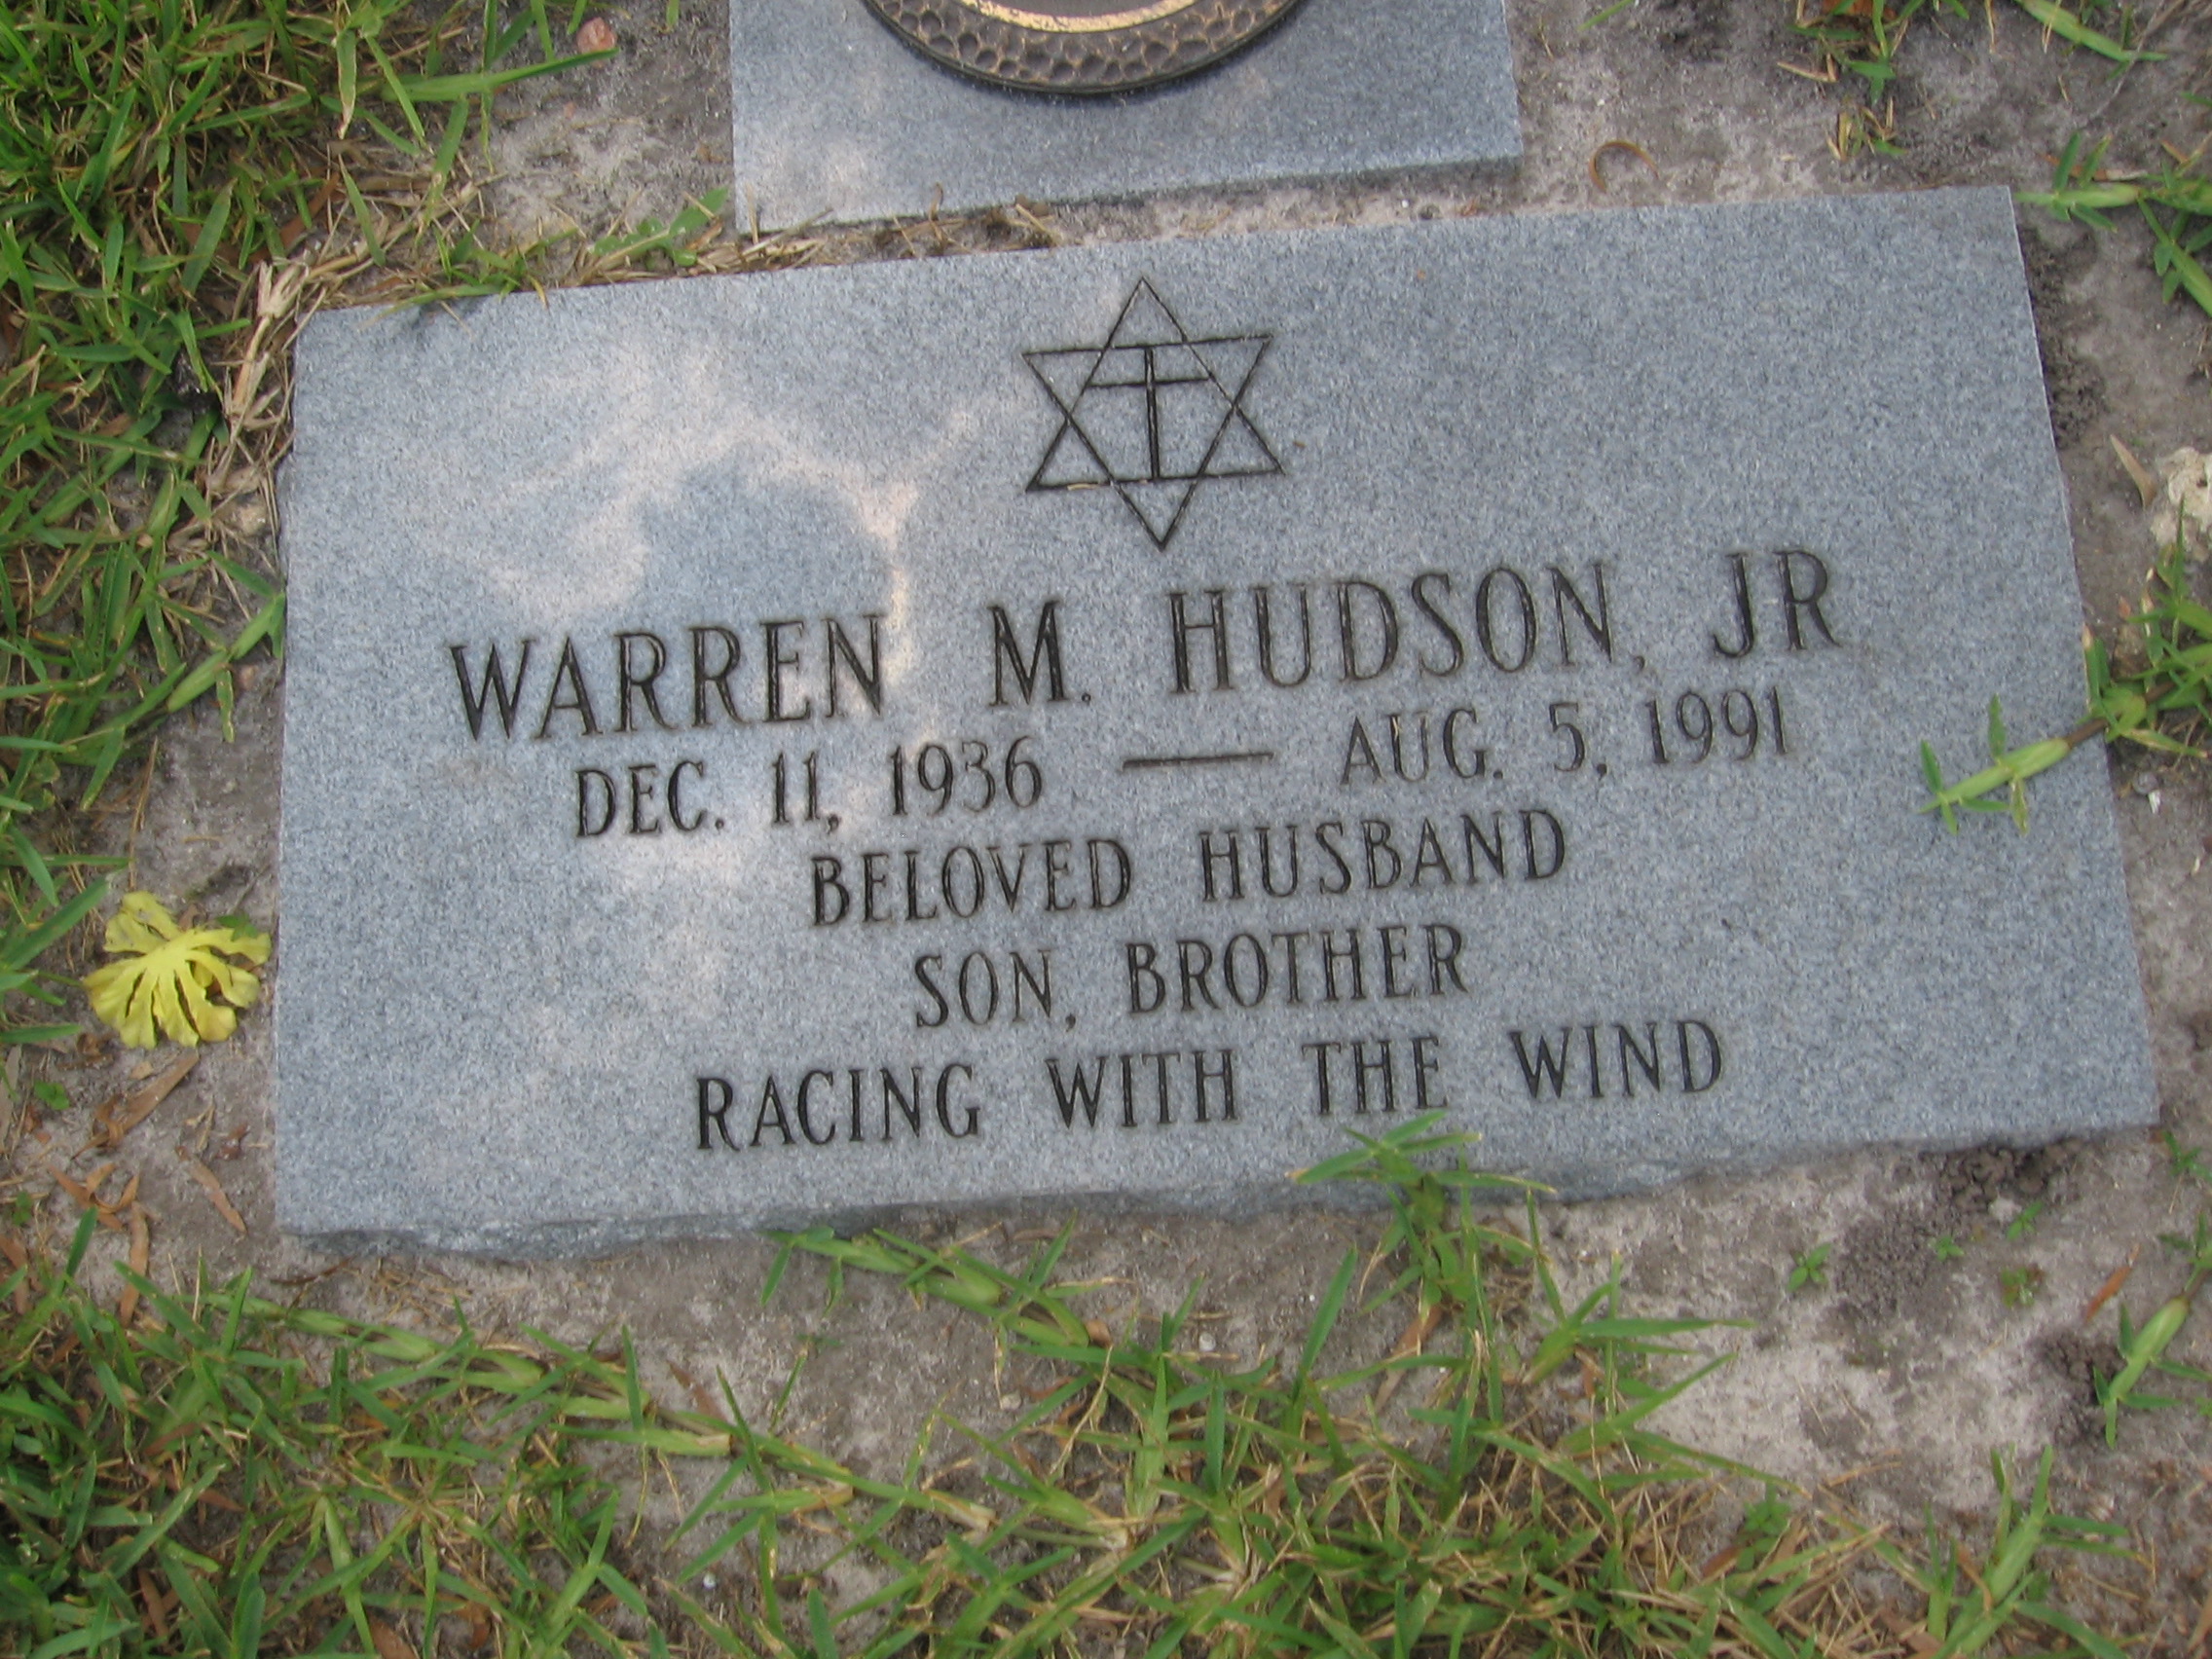 Warren M Hudson, Jr